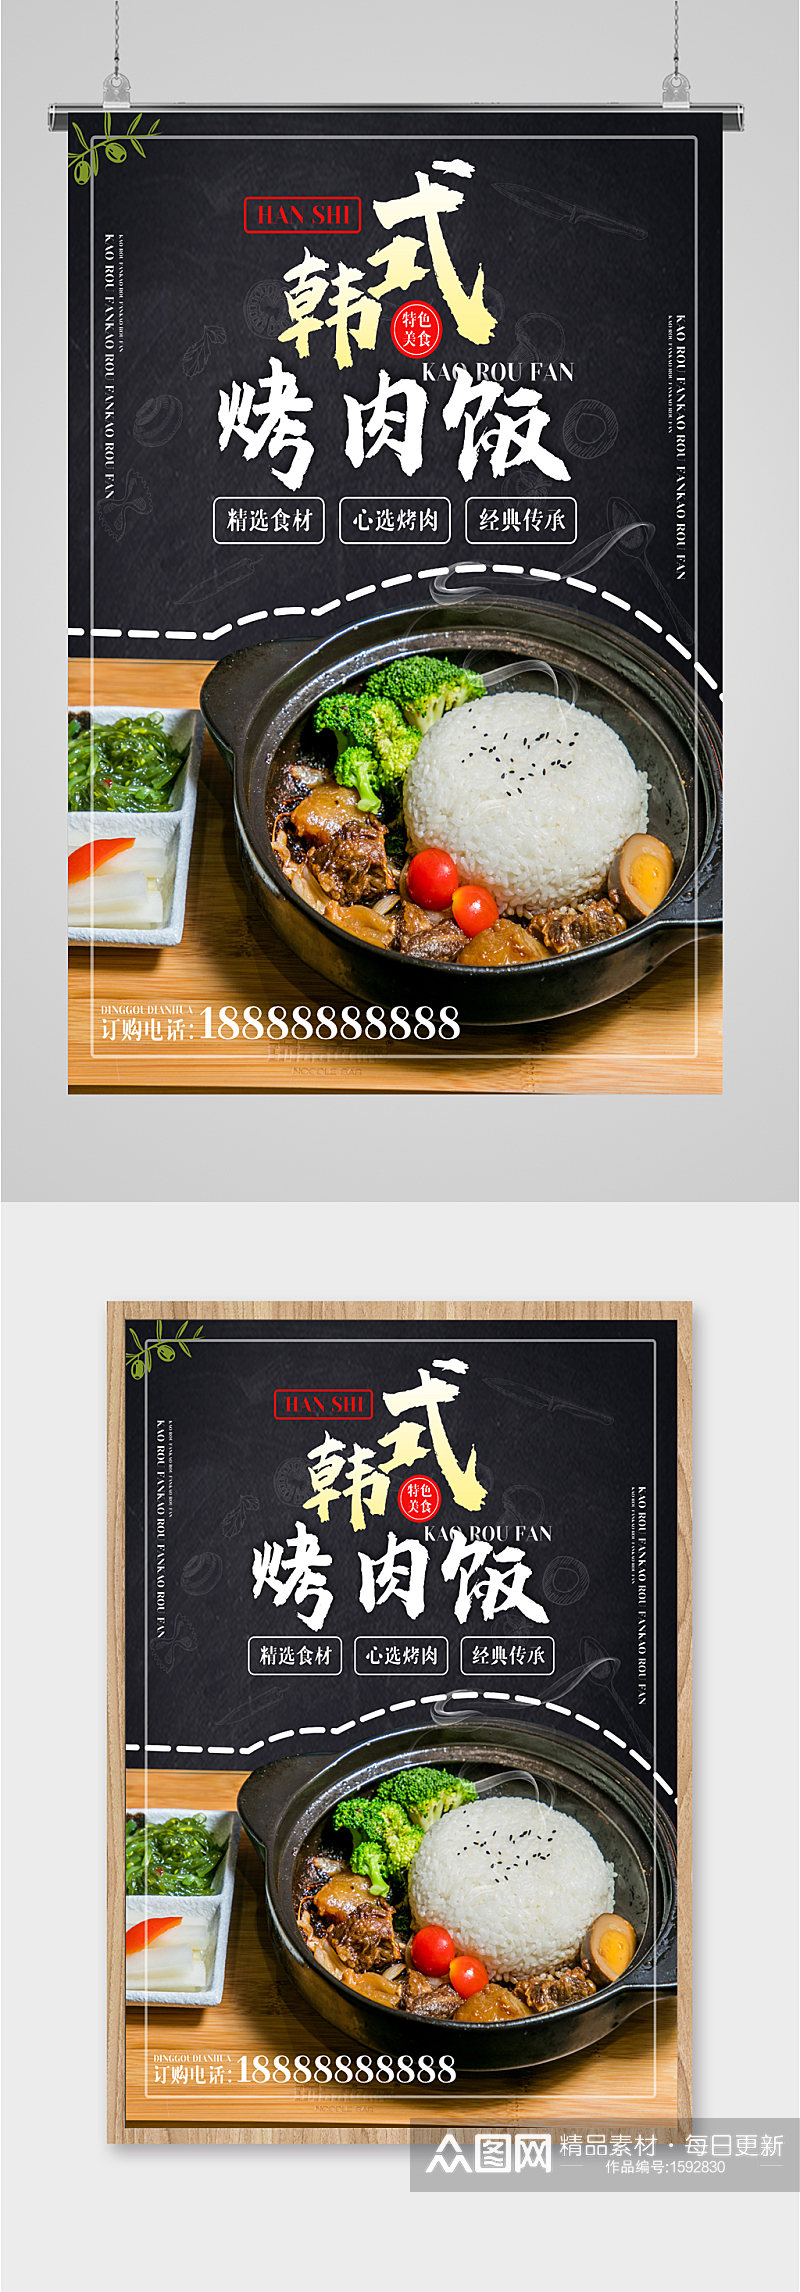 韩式烤肉饭美食海报素材